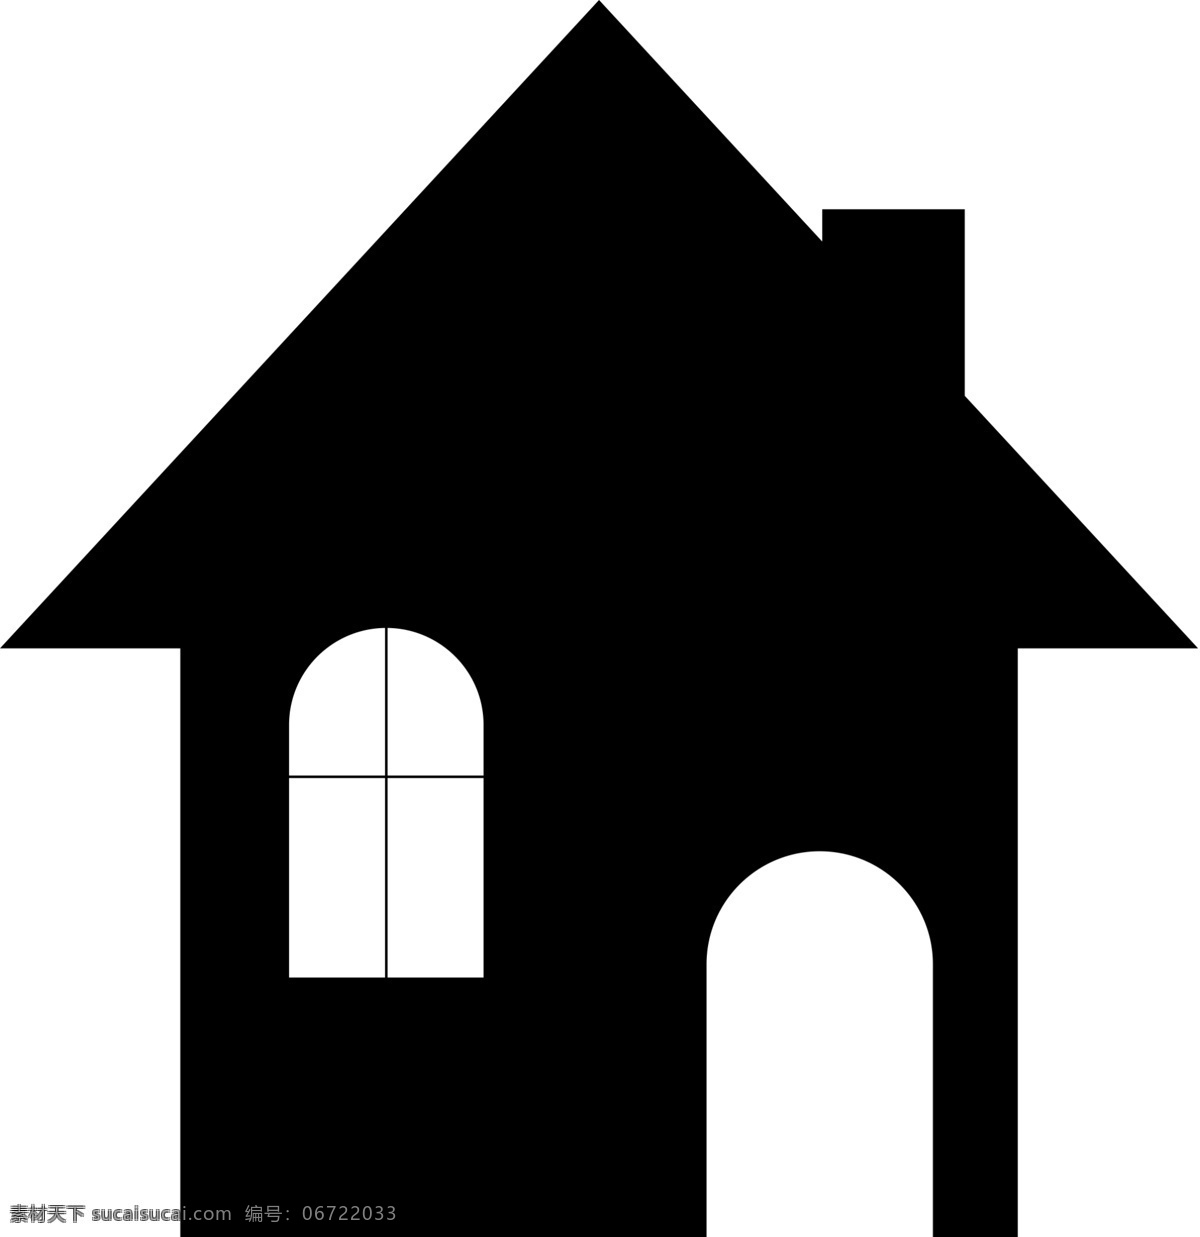 黑白 房子 剪影 图 矢量房子 简单 房子图标 房子logo 极简房子 黑白房子 卡通图标 房子剪影